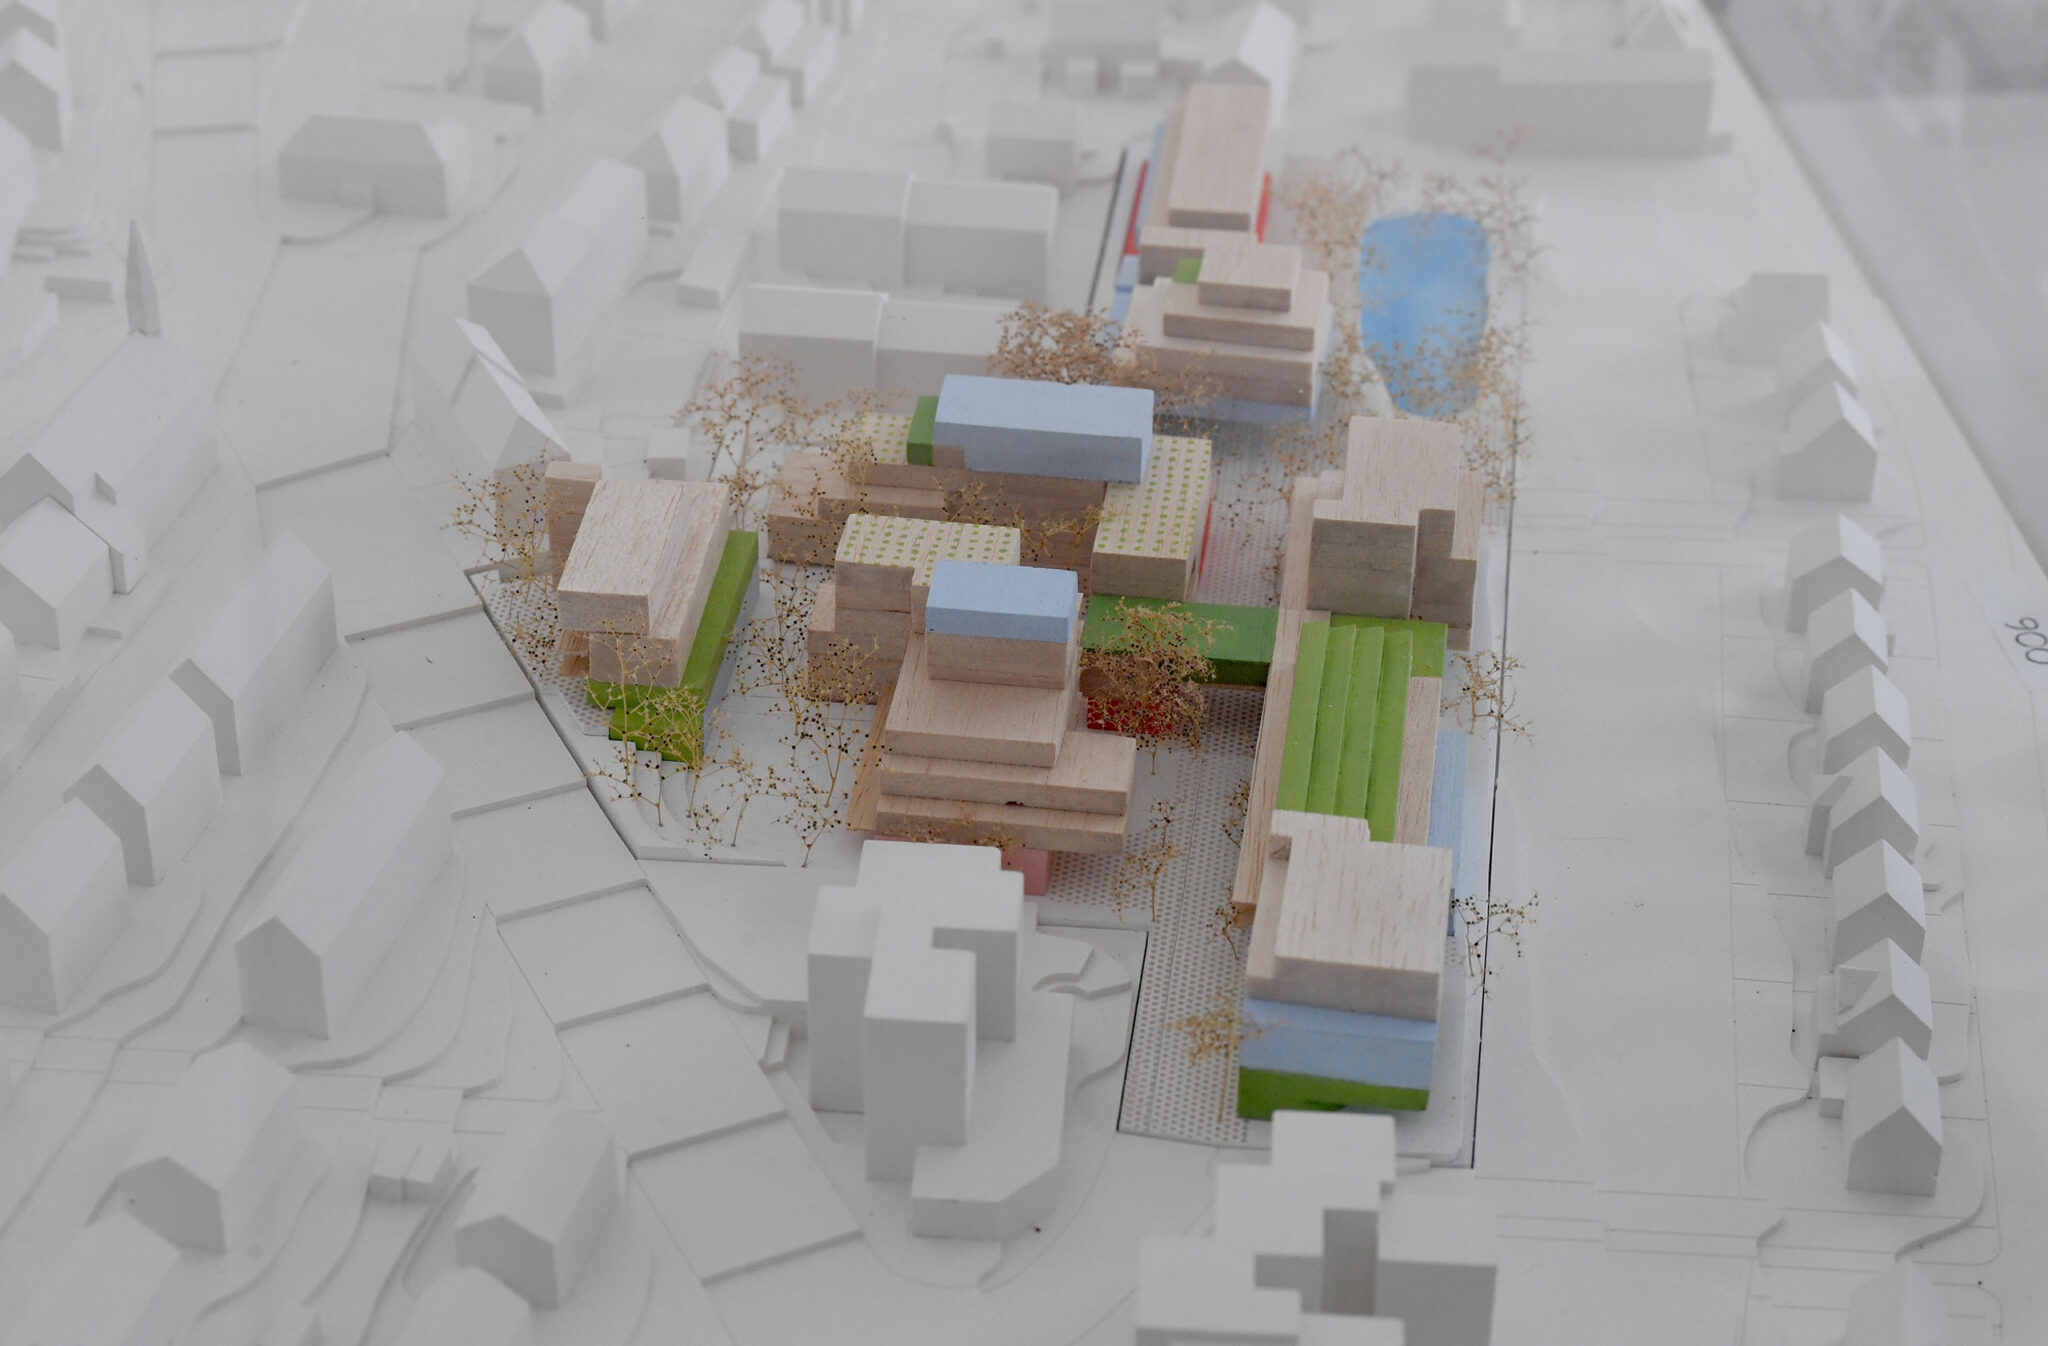 Modellfoto des Entwurfs für das IBA’27-Projekt »Zukunft Münster 2050« (Bild: IBA’27 / F. Kraufmann)